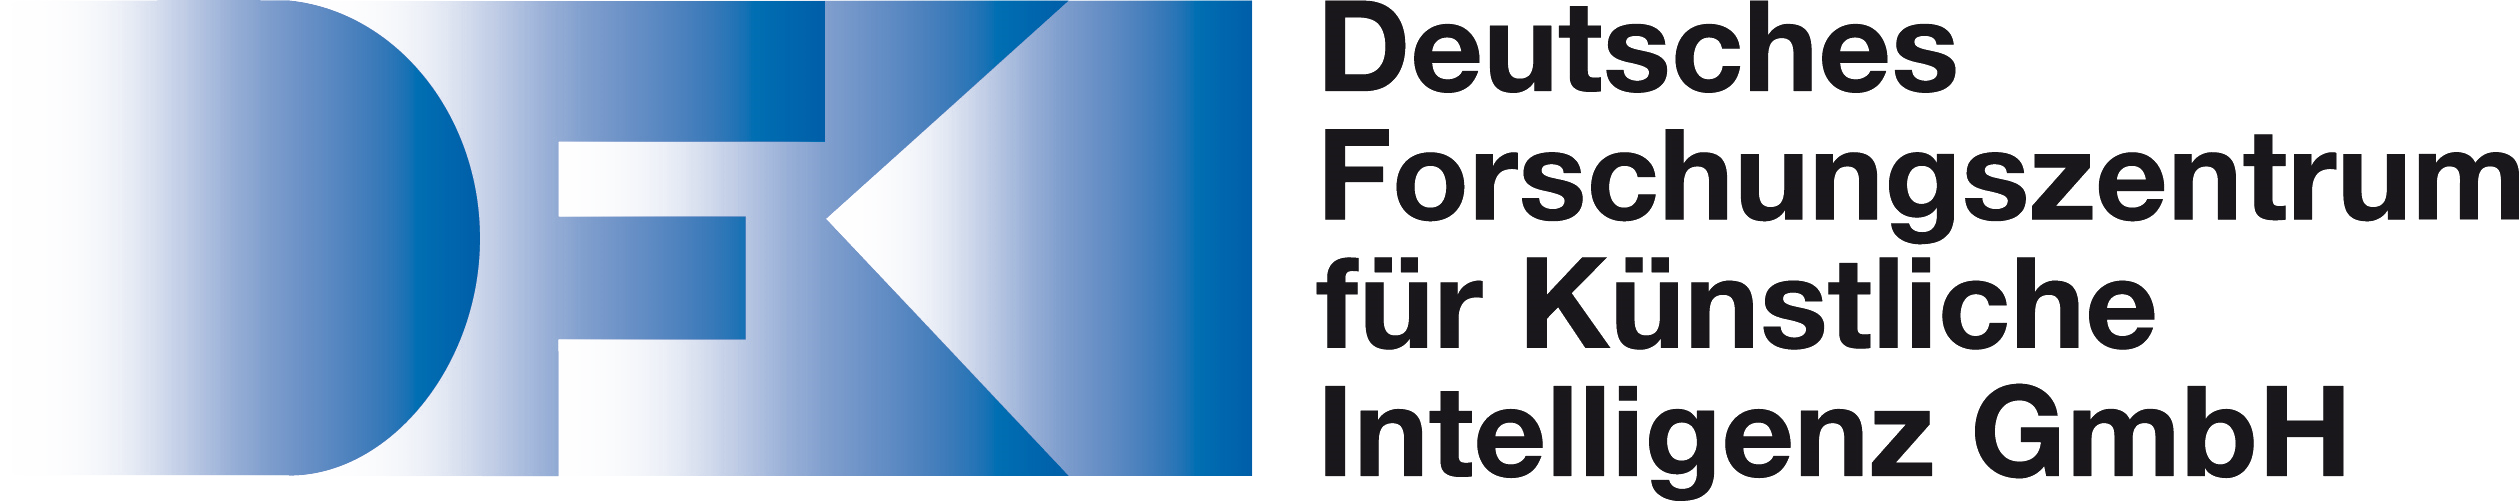 Logo Deutsches Forschungszentrum KI